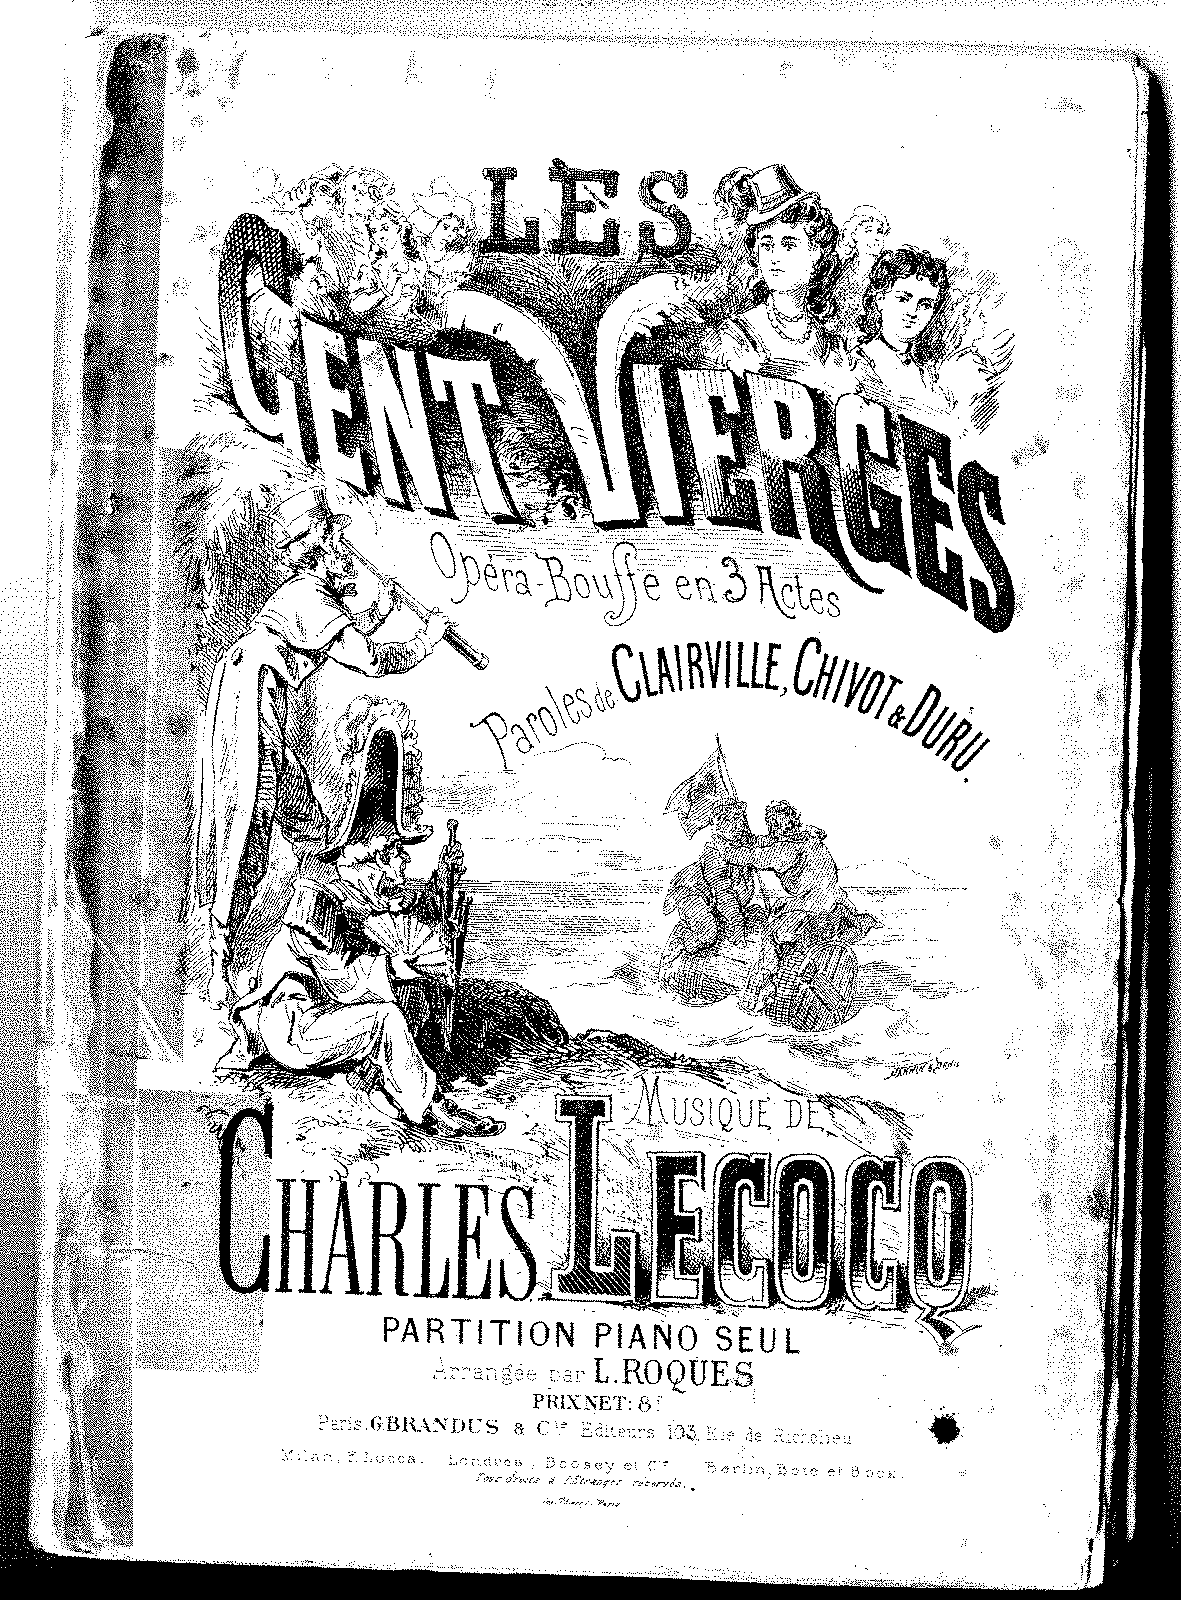 Les cent vierges (Lecocq, Charles) - IMSLP